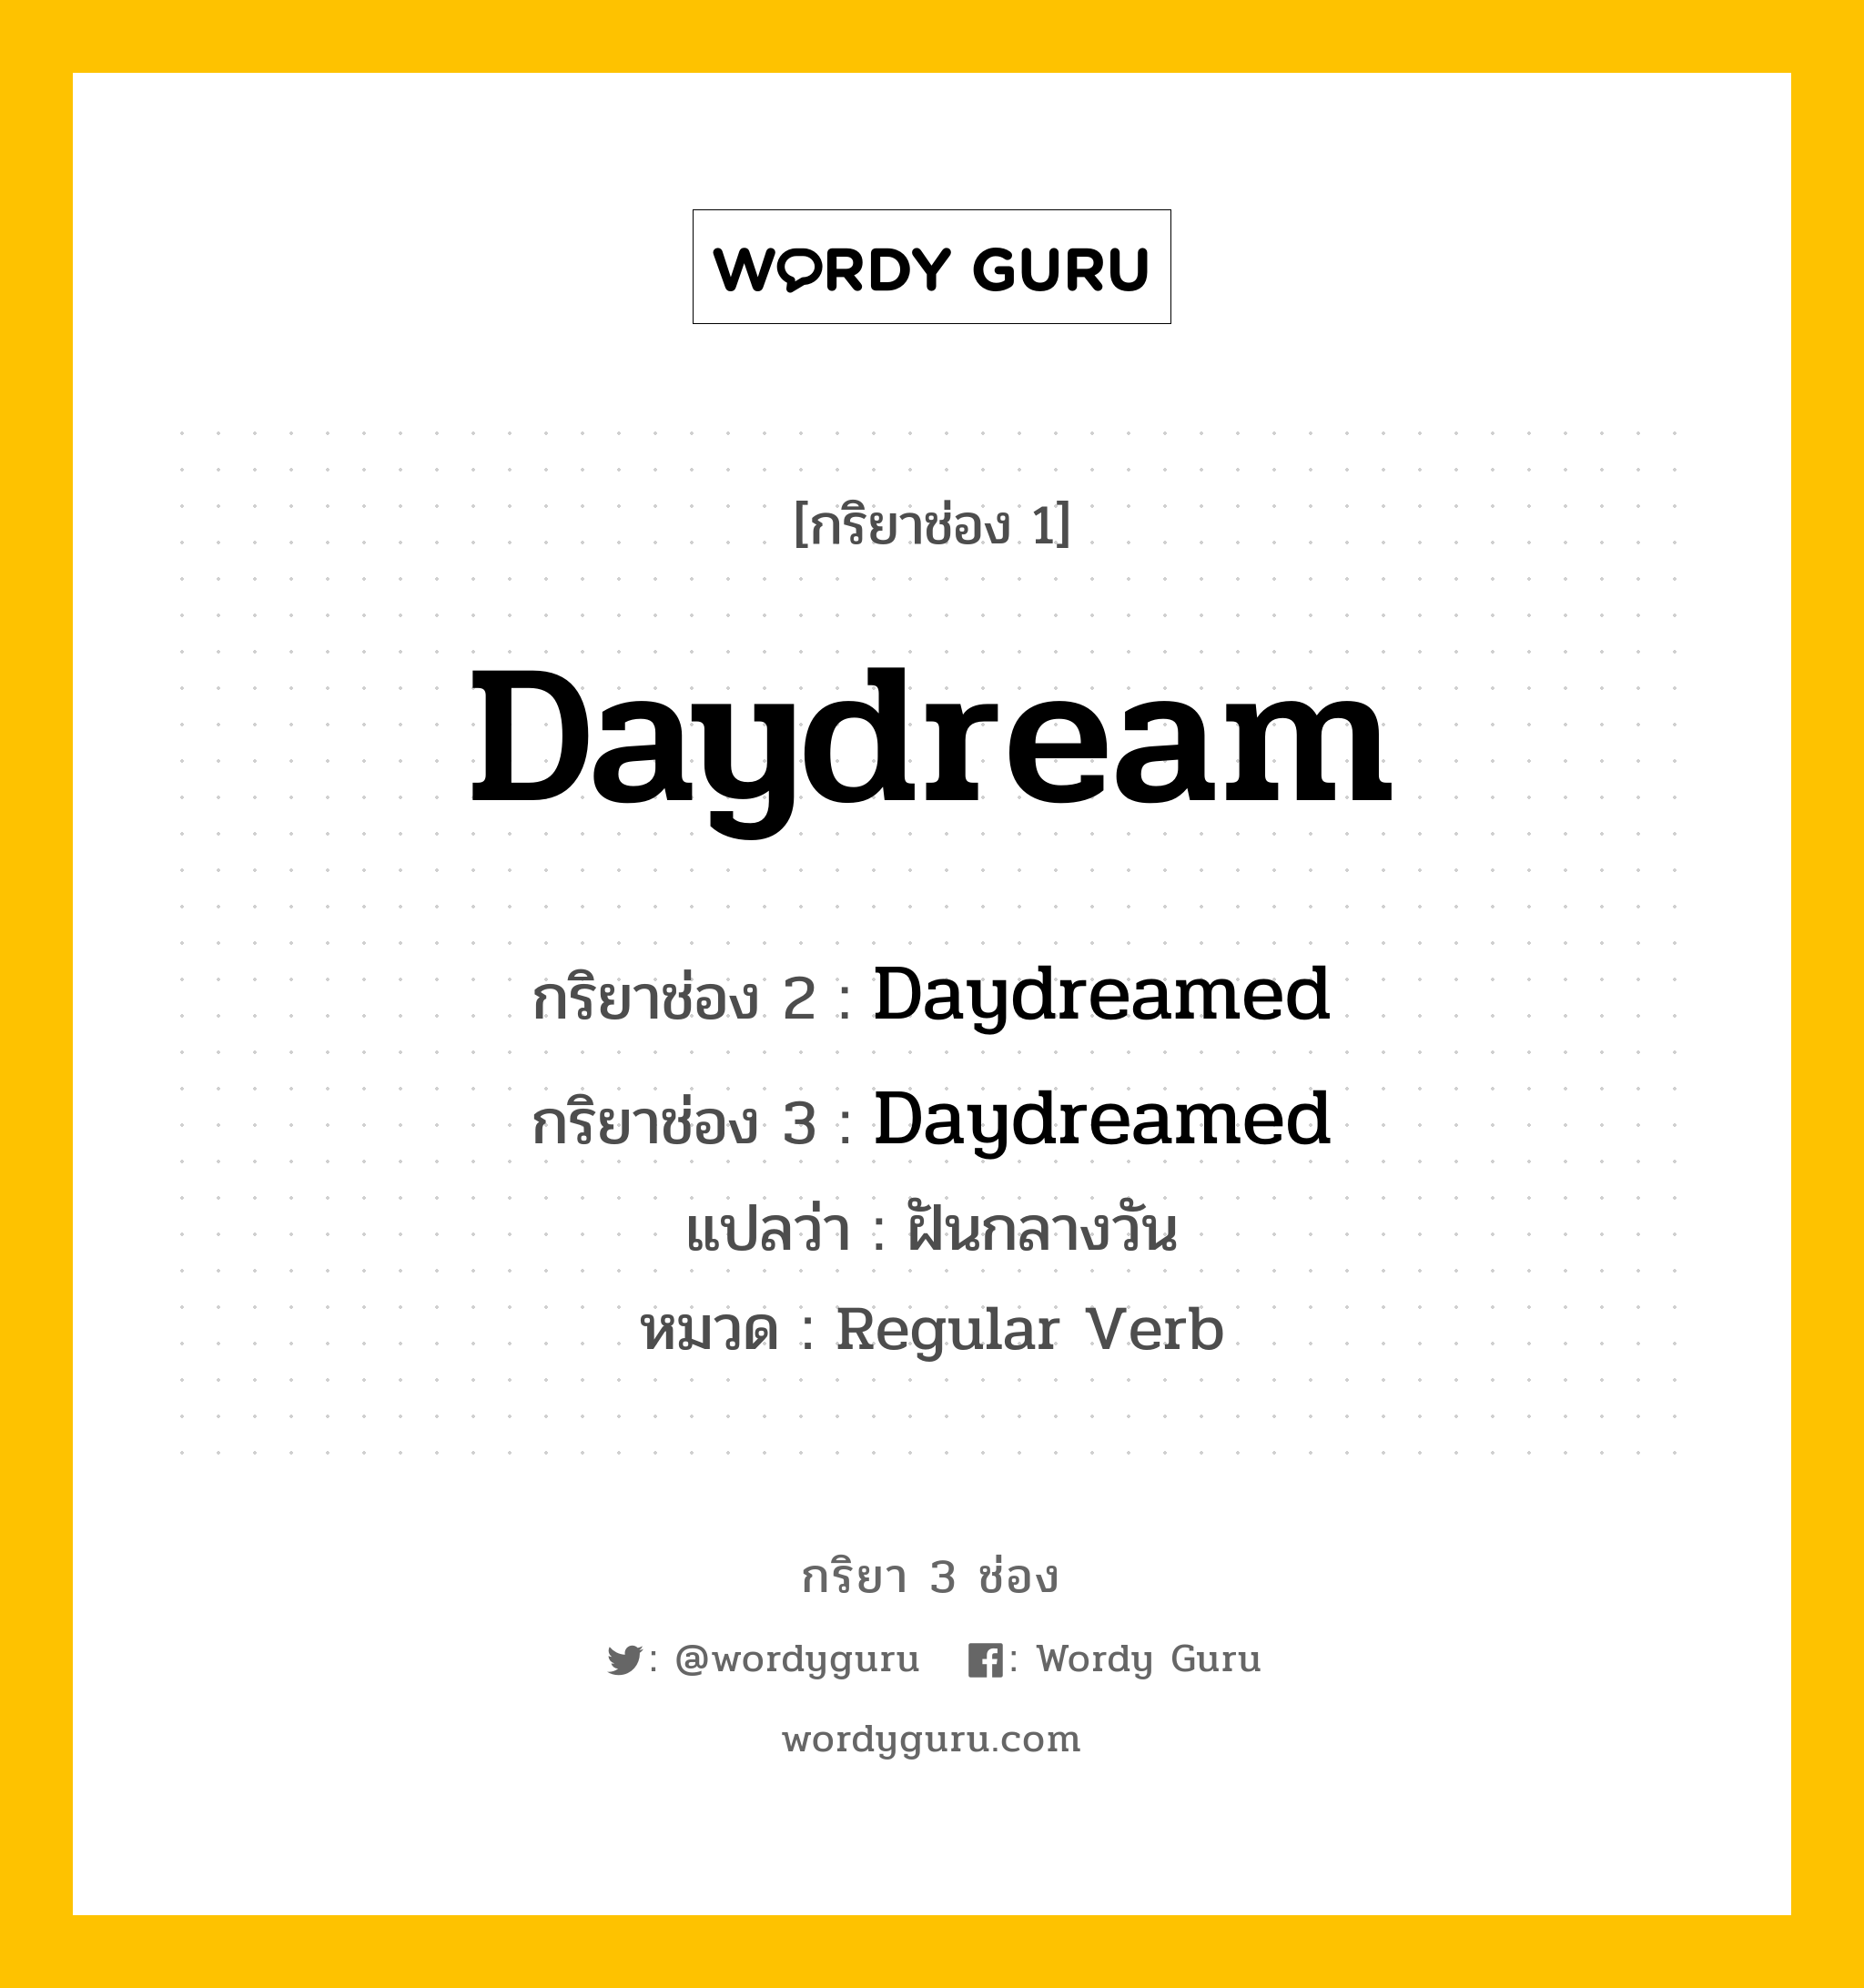 กริยา 3 ช่อง ของ Daydream คืออะไร? มาดูคำอ่าน คำแปลกันเลย, กริยาช่อง 1 Daydream กริยาช่อง 2 Daydreamed กริยาช่อง 3 Daydreamed แปลว่า ฝันกลางวัน หมวด Regular Verb หมวด Regular Verb